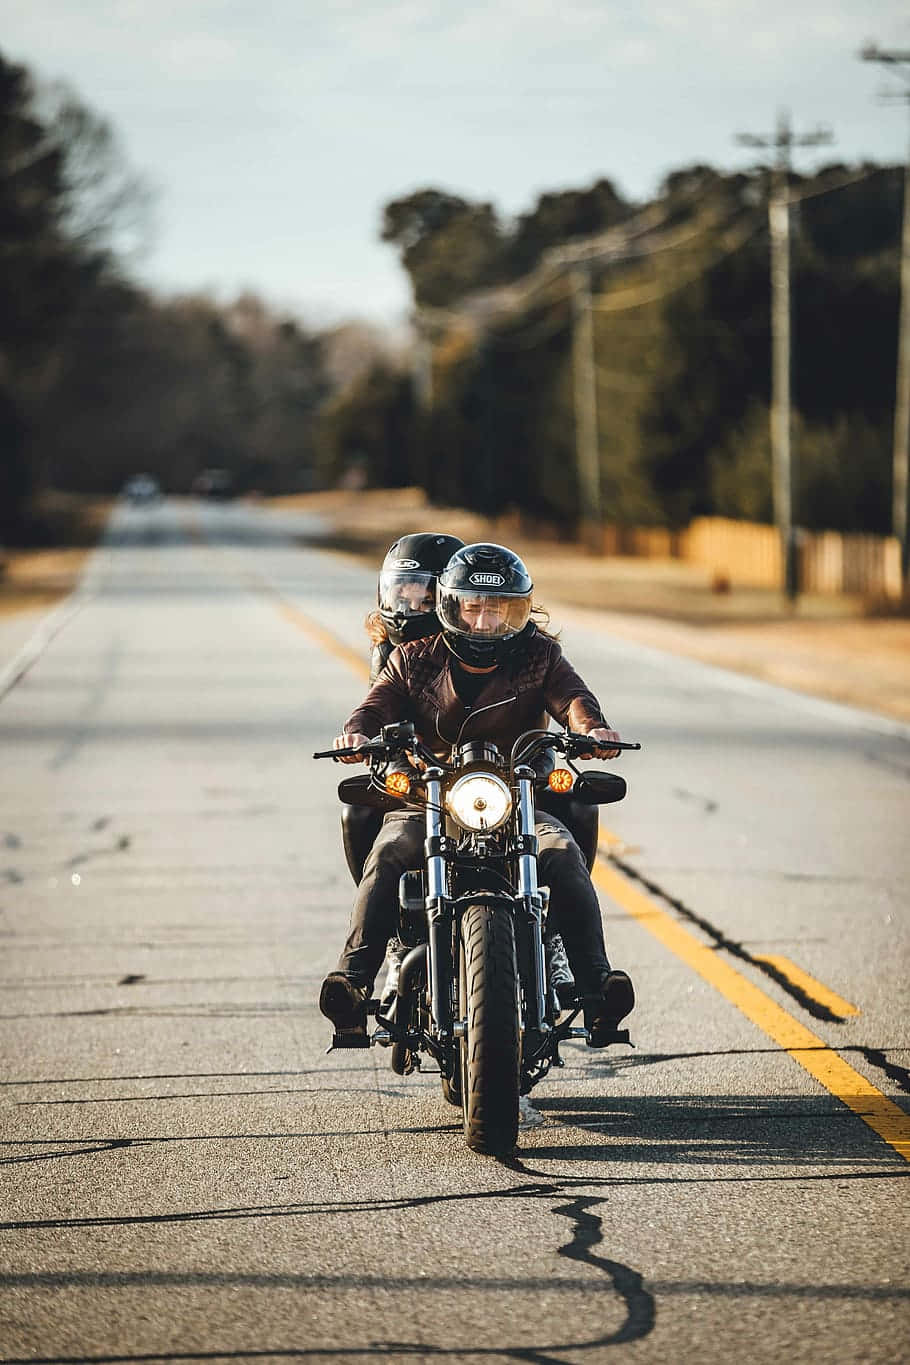 queBridge – Par af motorcykelryttere på et billedskønt bro